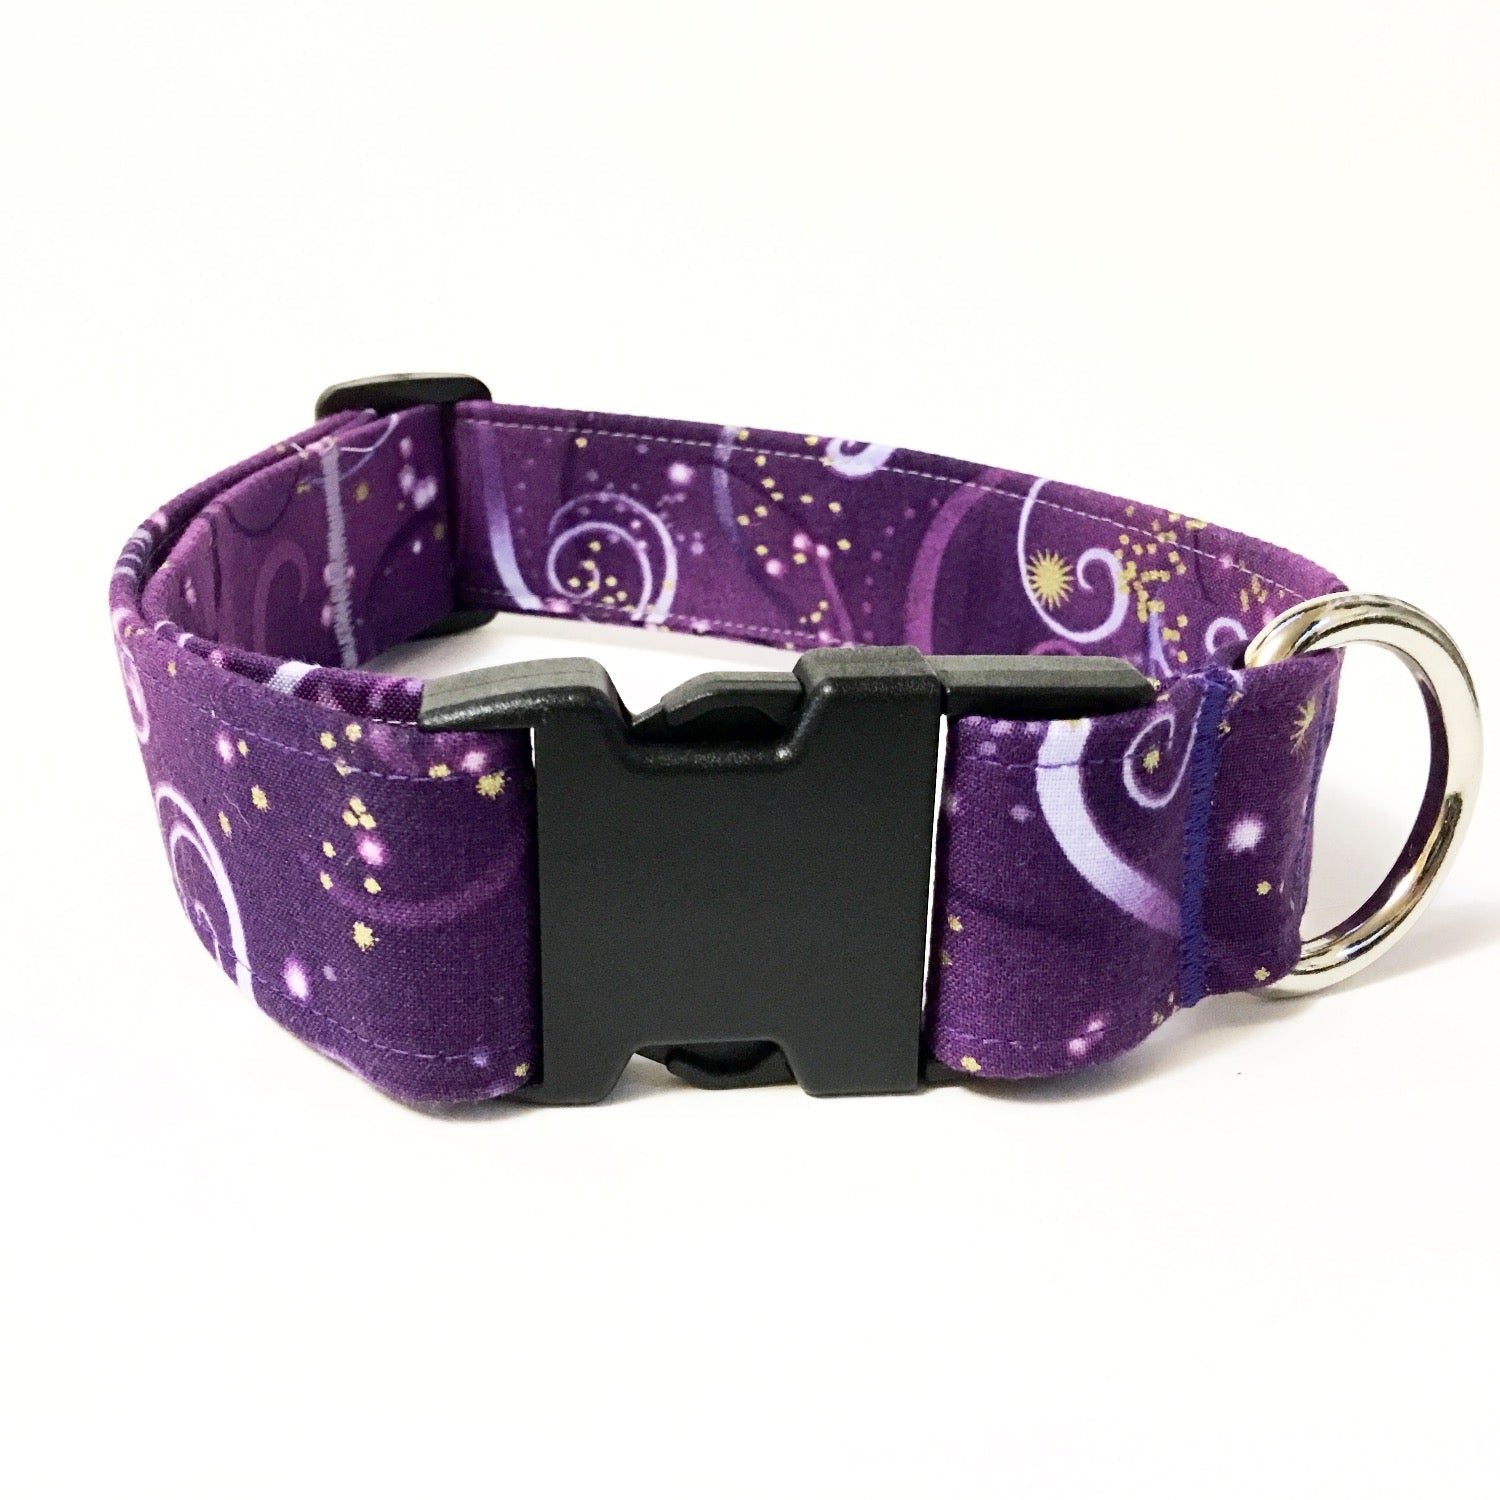 Purple Haze Buckle Collar - N.G. Collars